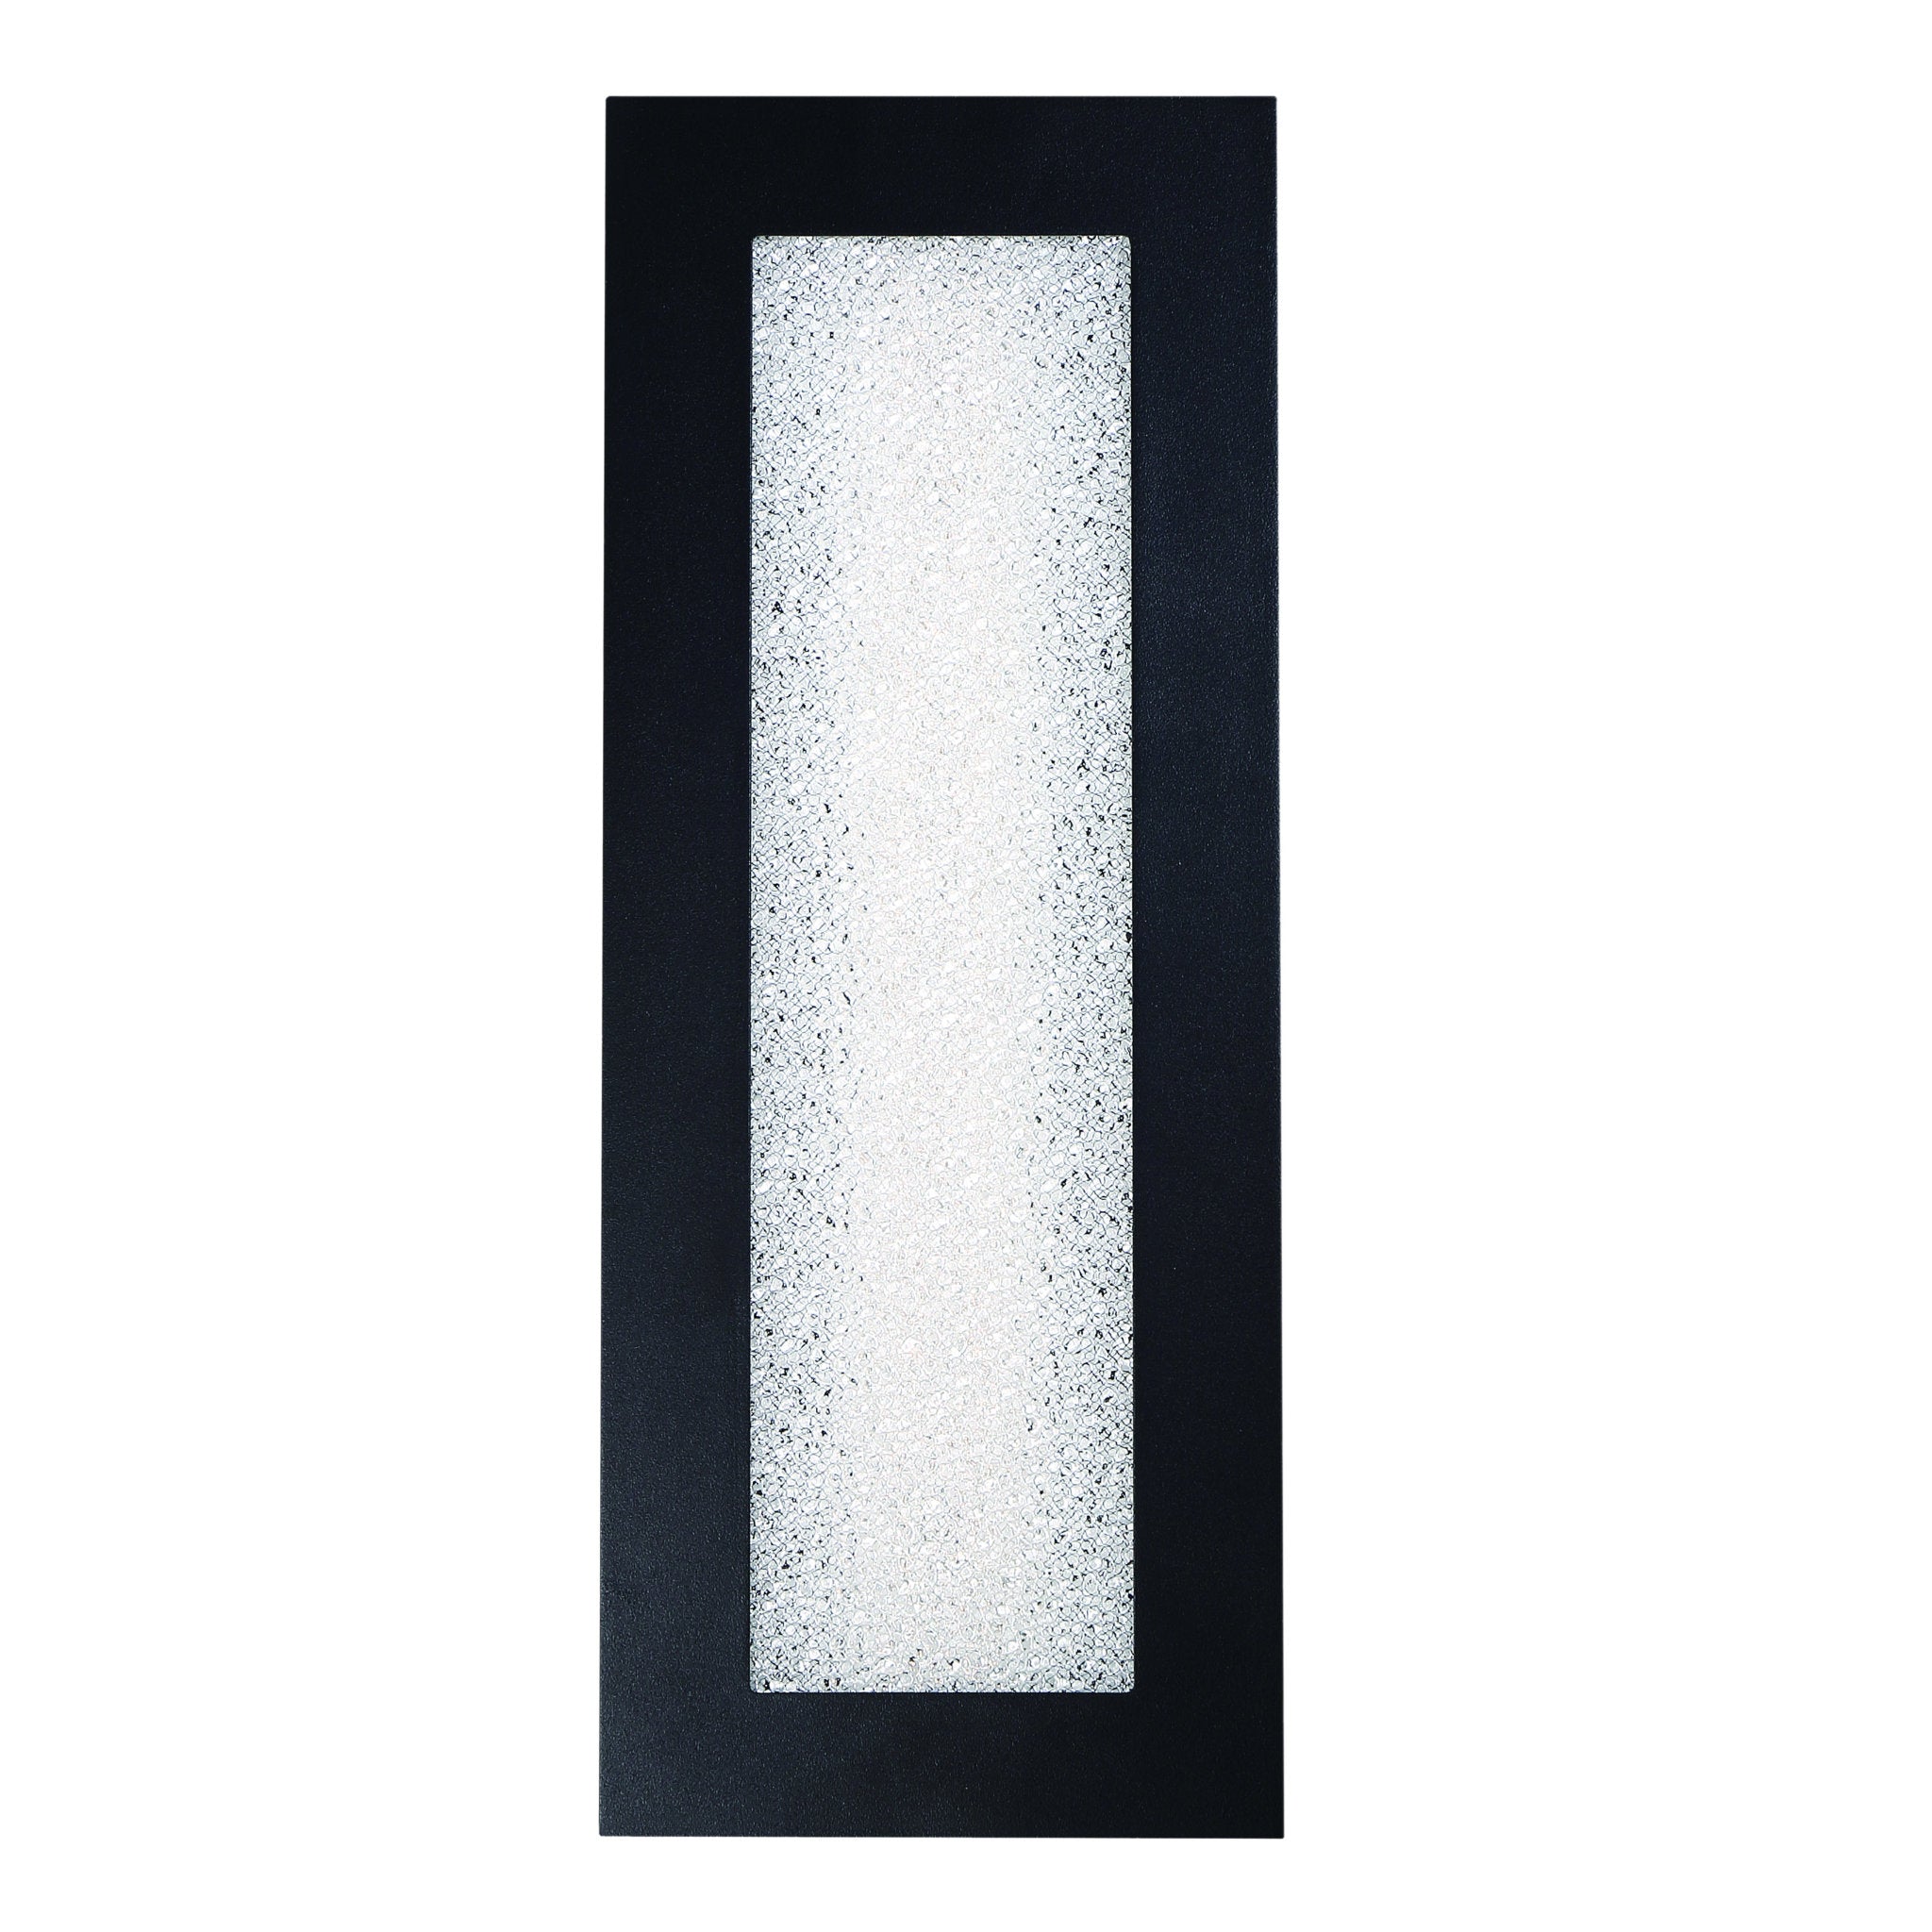 Modern Forms WS-W71918-BK 3500K 13 Watt Frost LED Outdoor Wall Light in Black